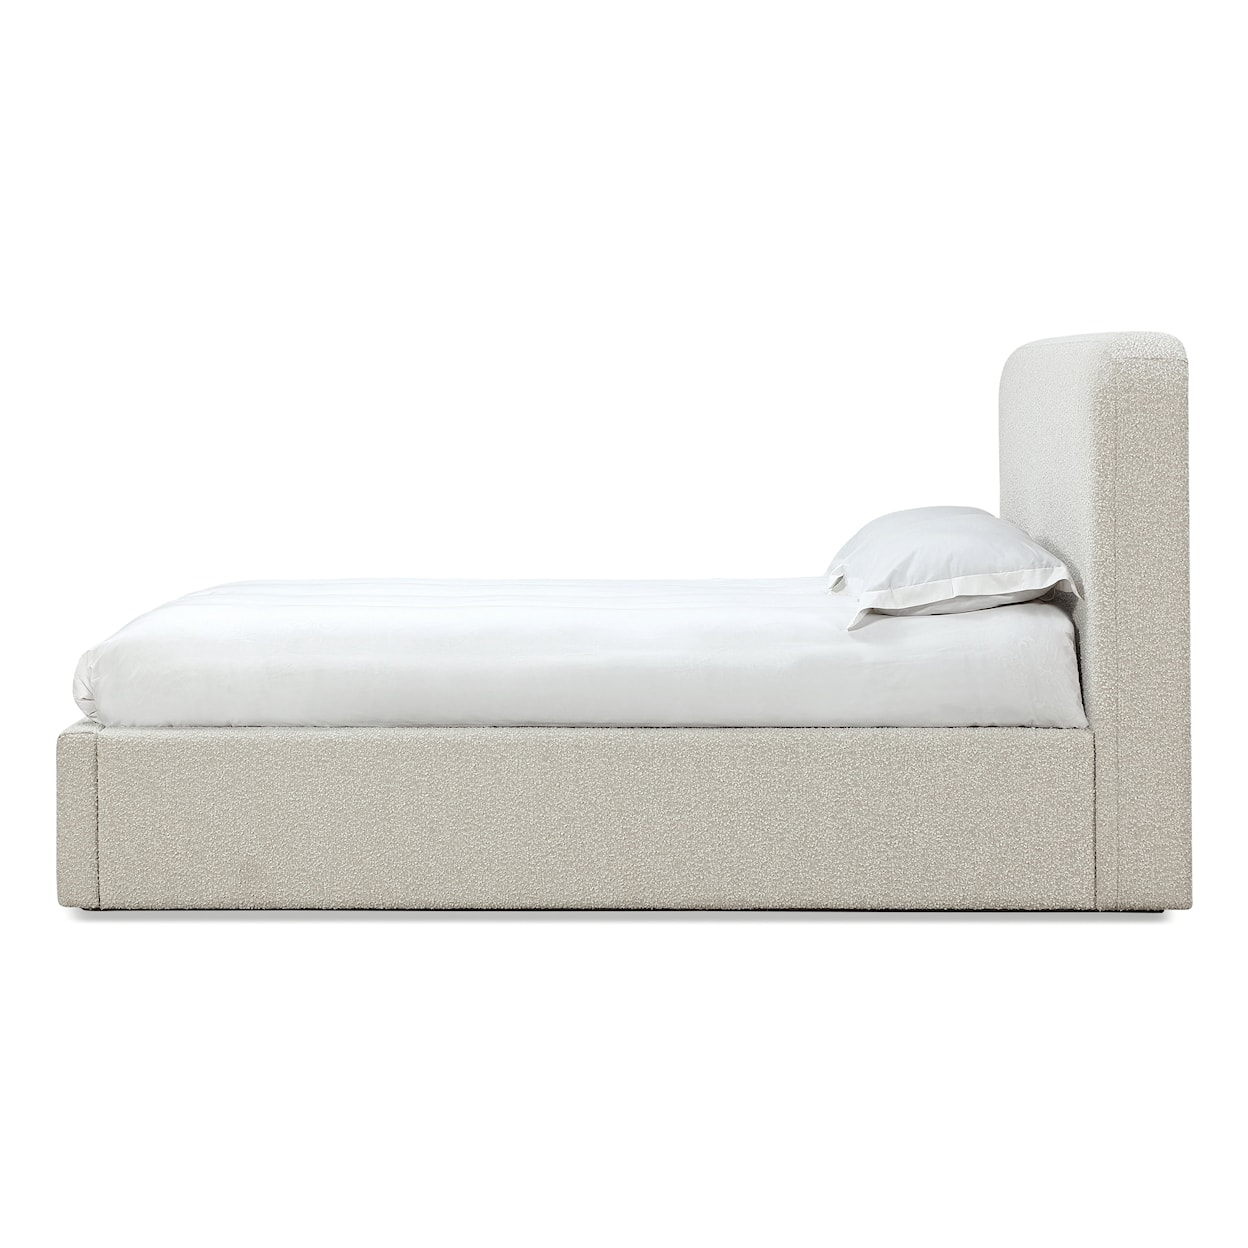 Modus International Off-White King Upholstered Platform Bed